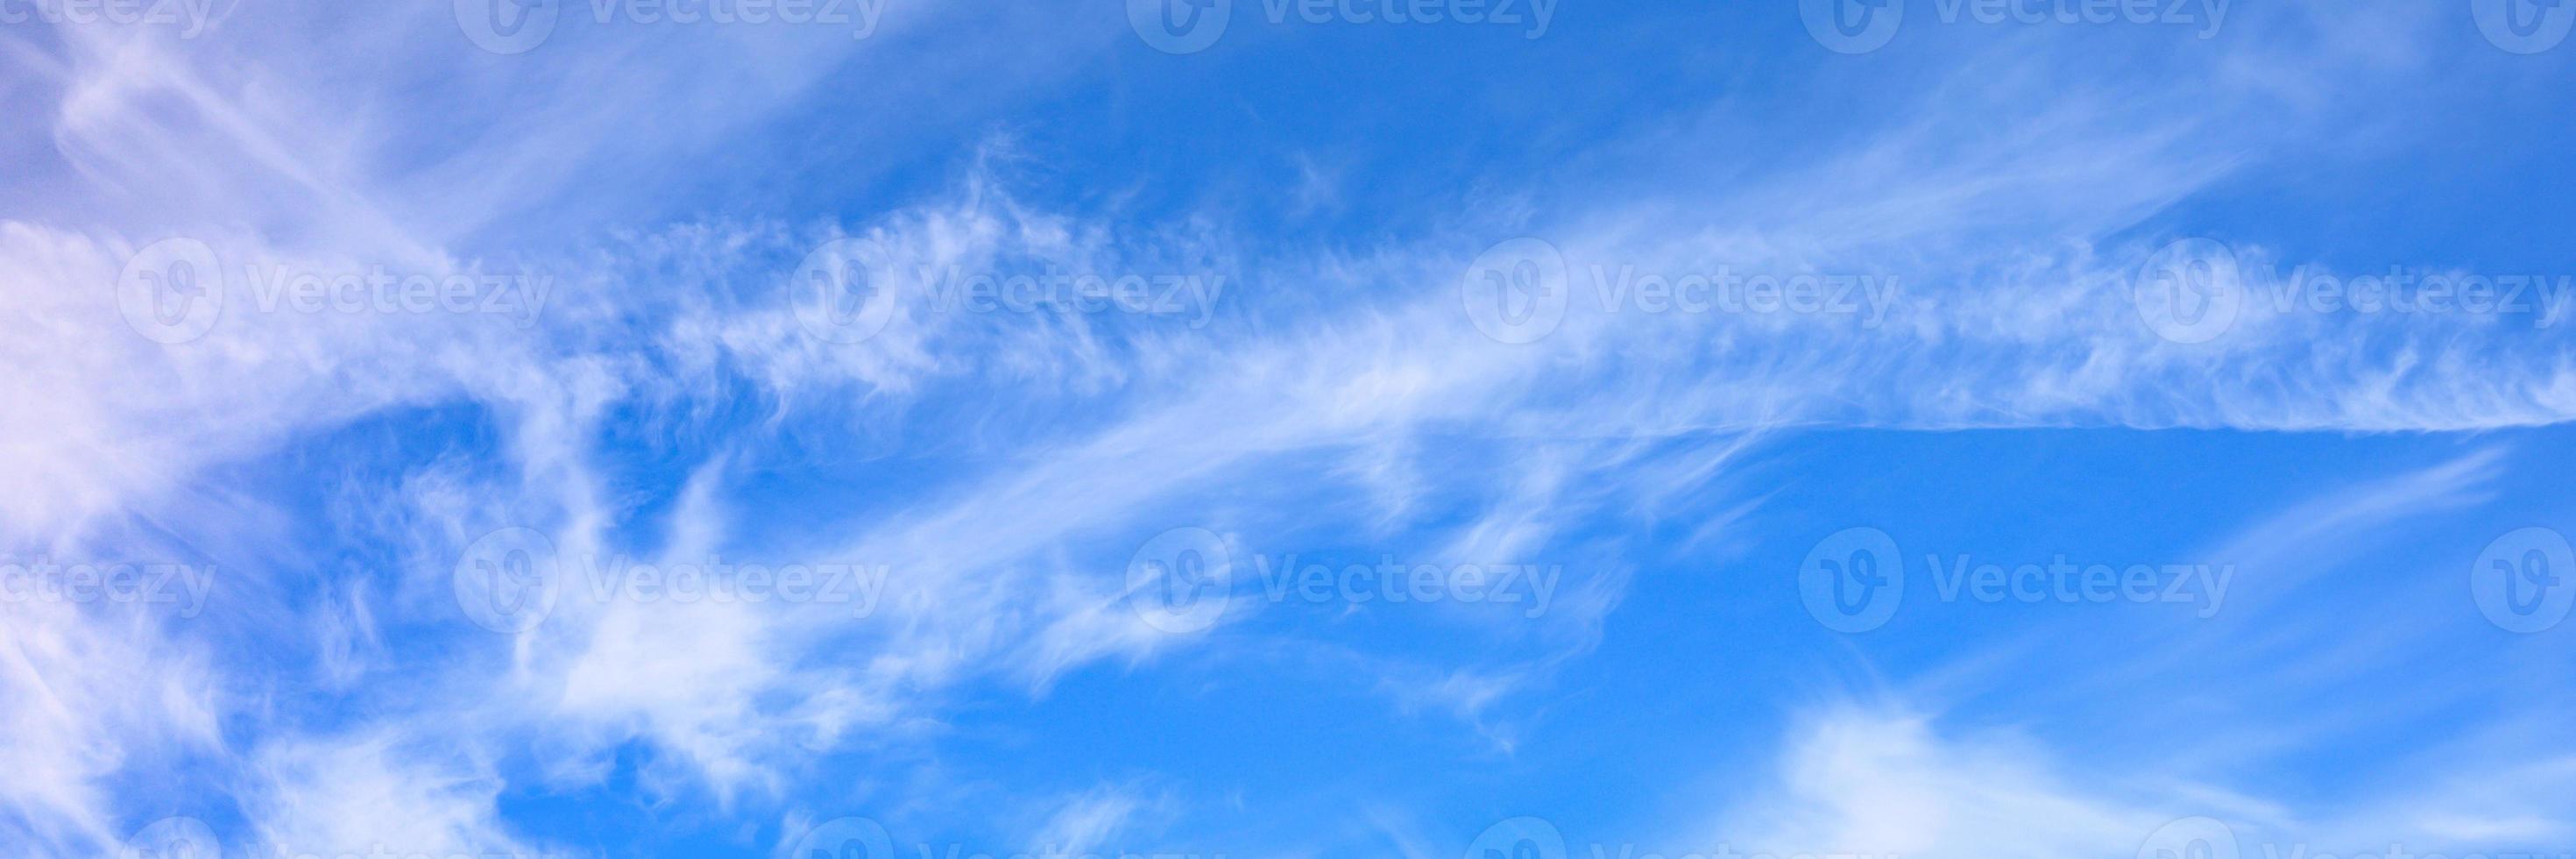 schöne blaue Himmelswolken foto